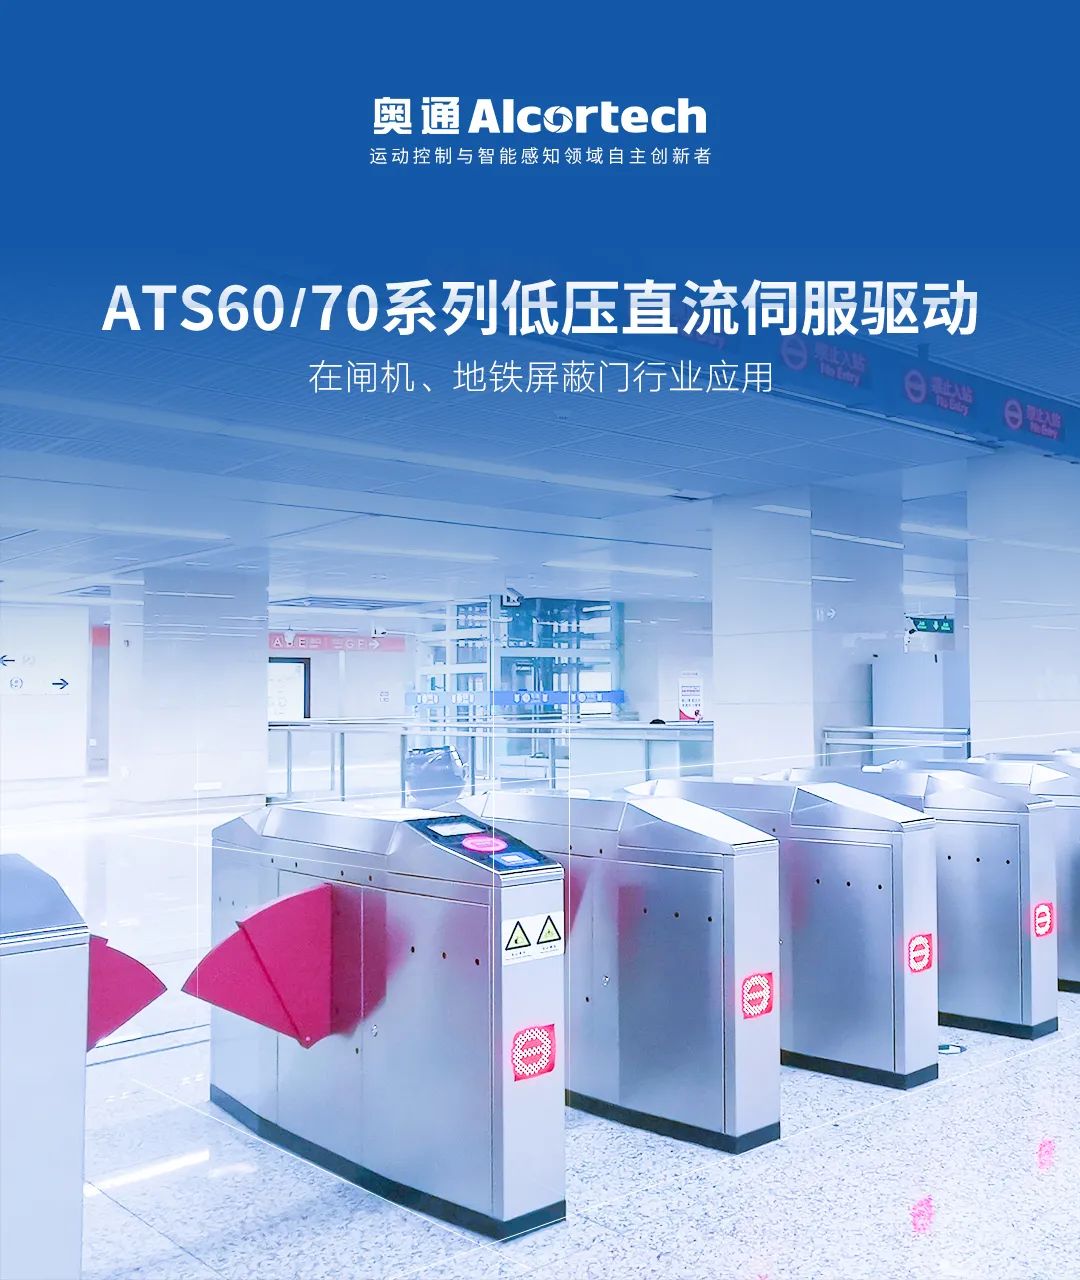 行业应用 | ATS60/70系列低压直流伺服驱动在闸机、地铁屏蔽门行业应用